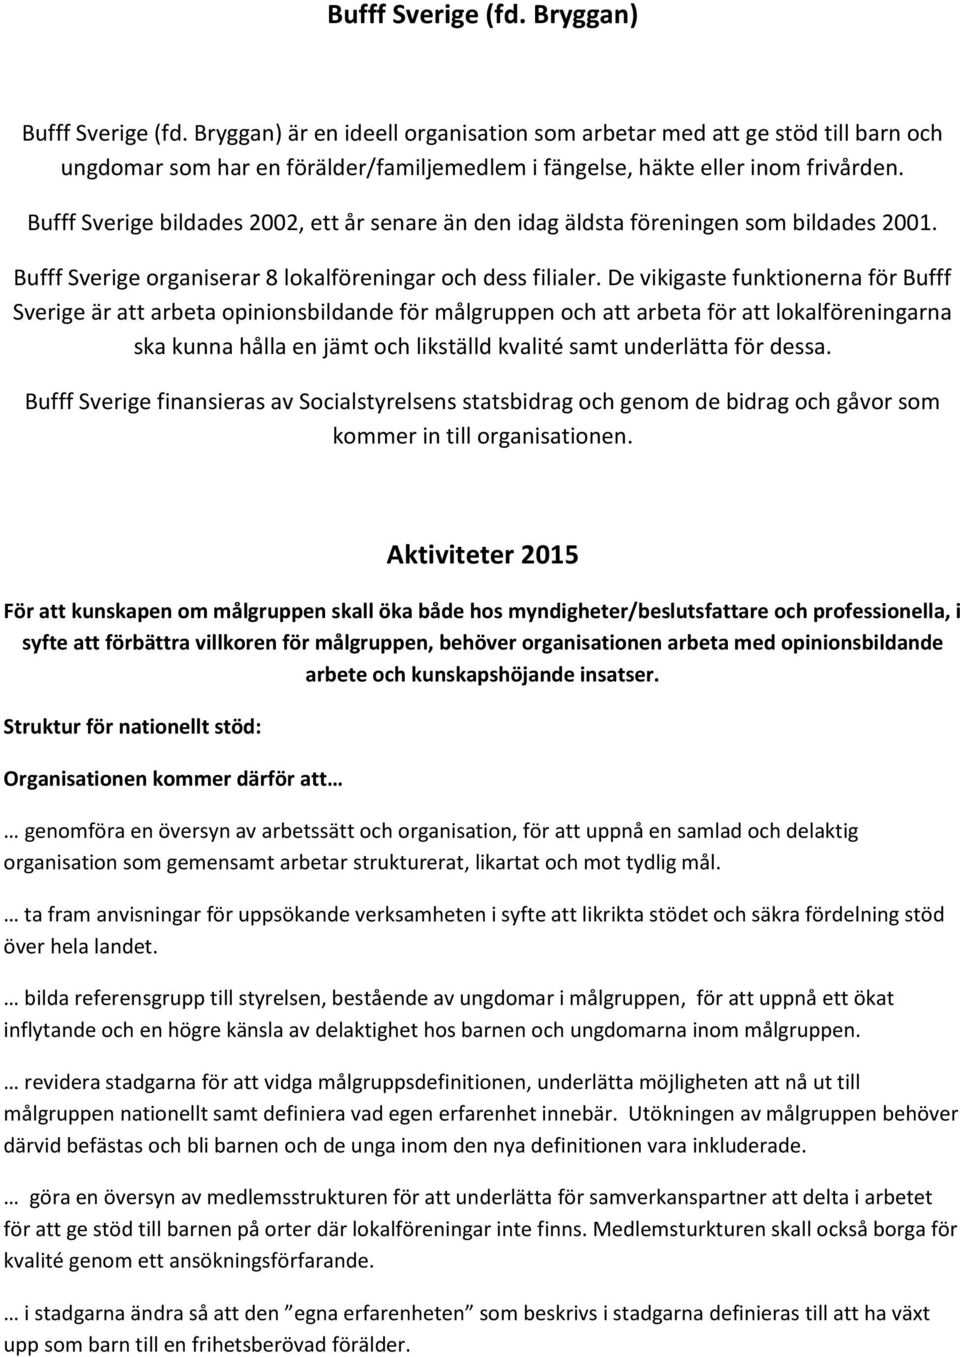 Bufff Sverige bildades 2002, ett år senare än den idag äldsta föreningen som bildades 2001. Bufff Sverige organiserar 8 lokalföreningar och dess filialer.